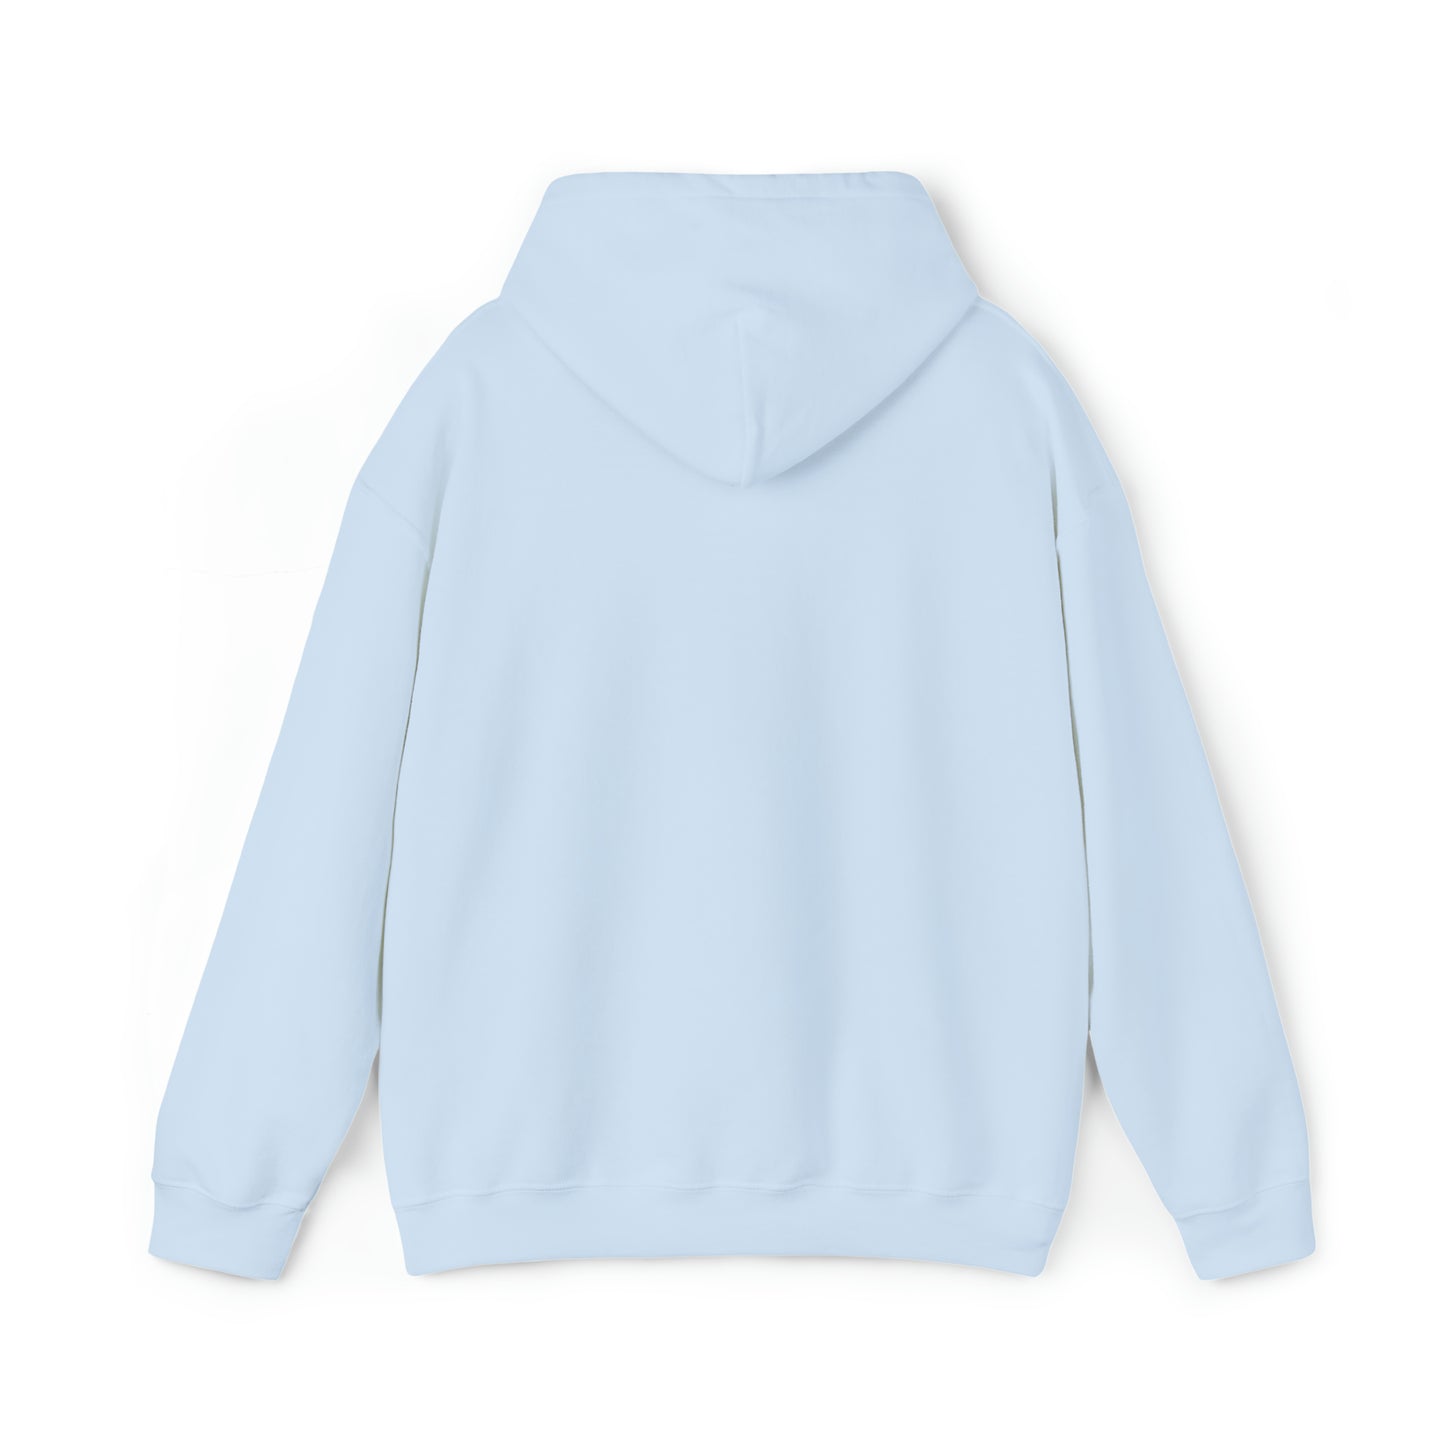 Fancy Unisex Hooded Sweatshirt